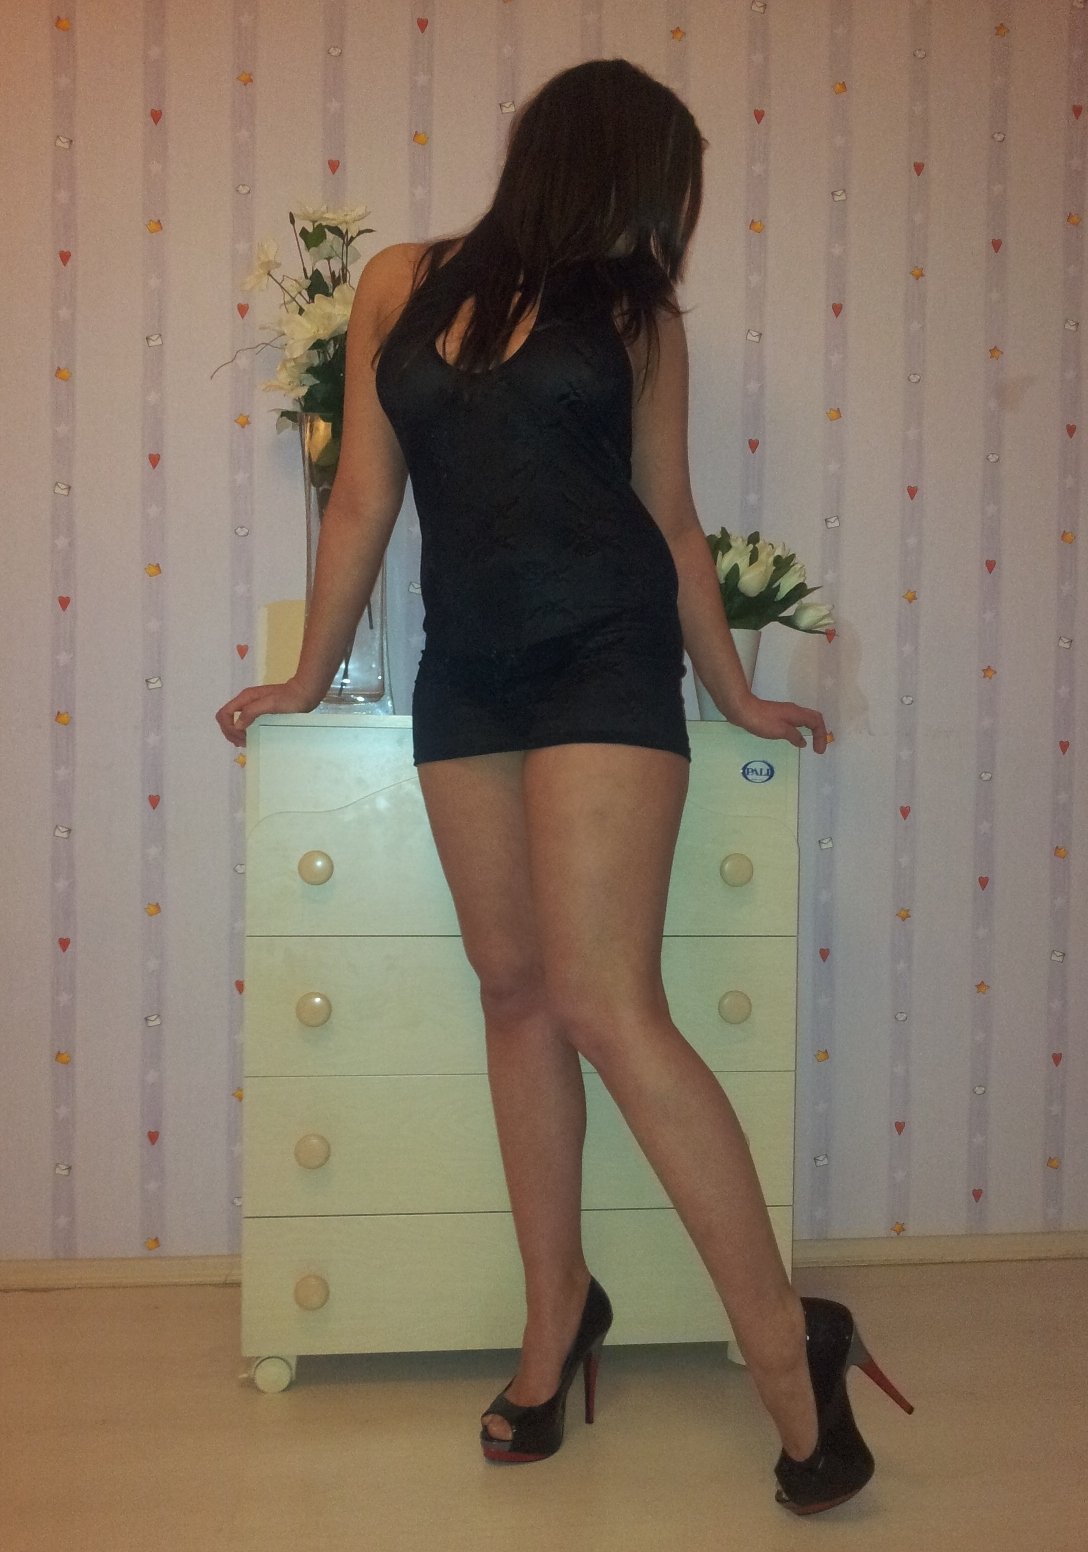 Проститутка Яна возрастом 22 с ростом 170 см для интима в Москве